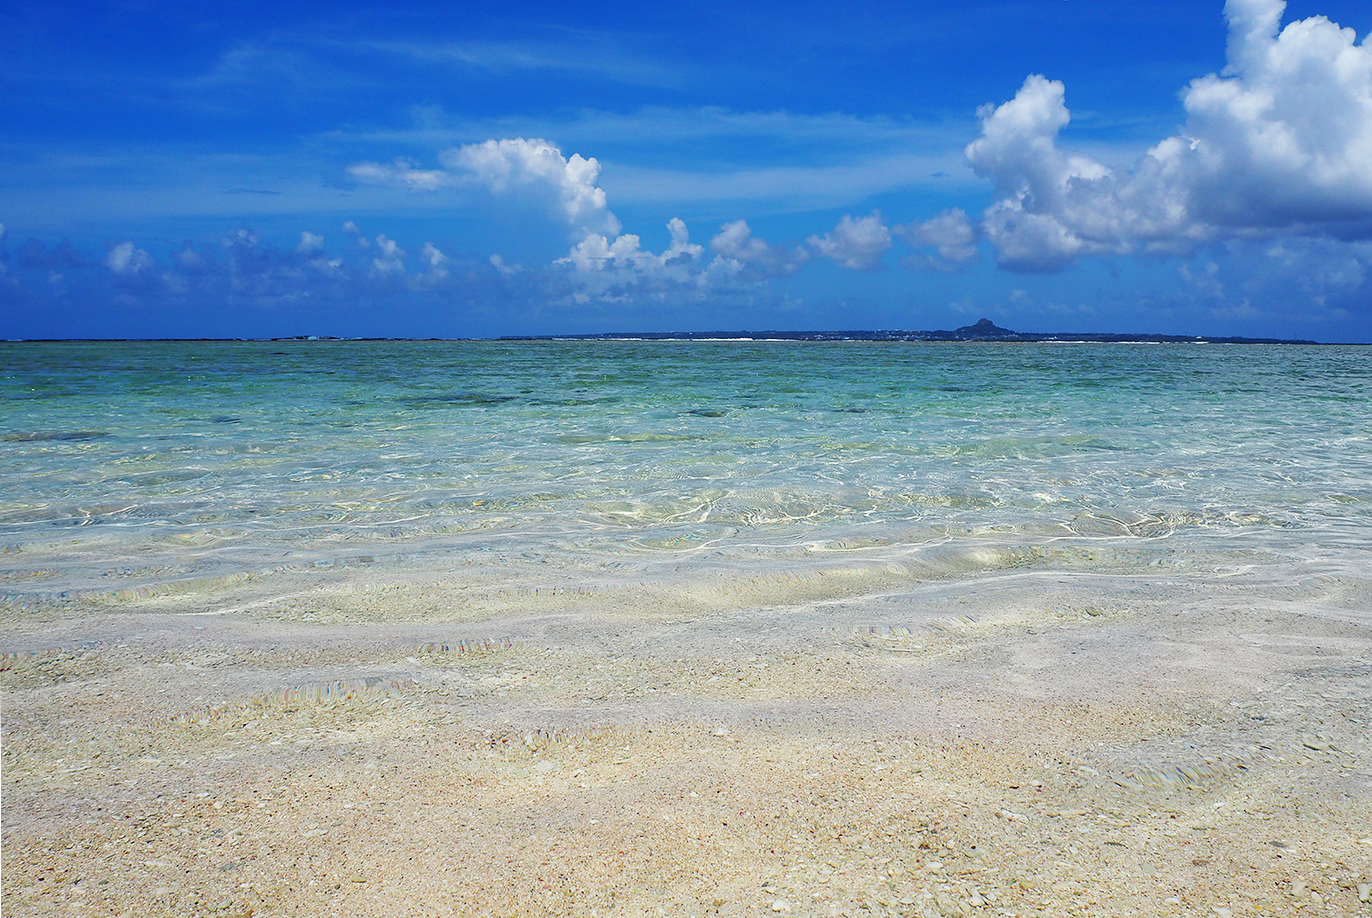 透明度抜群のビーチで遊ぶ「ヒルトン沖縄瀬底リゾート」